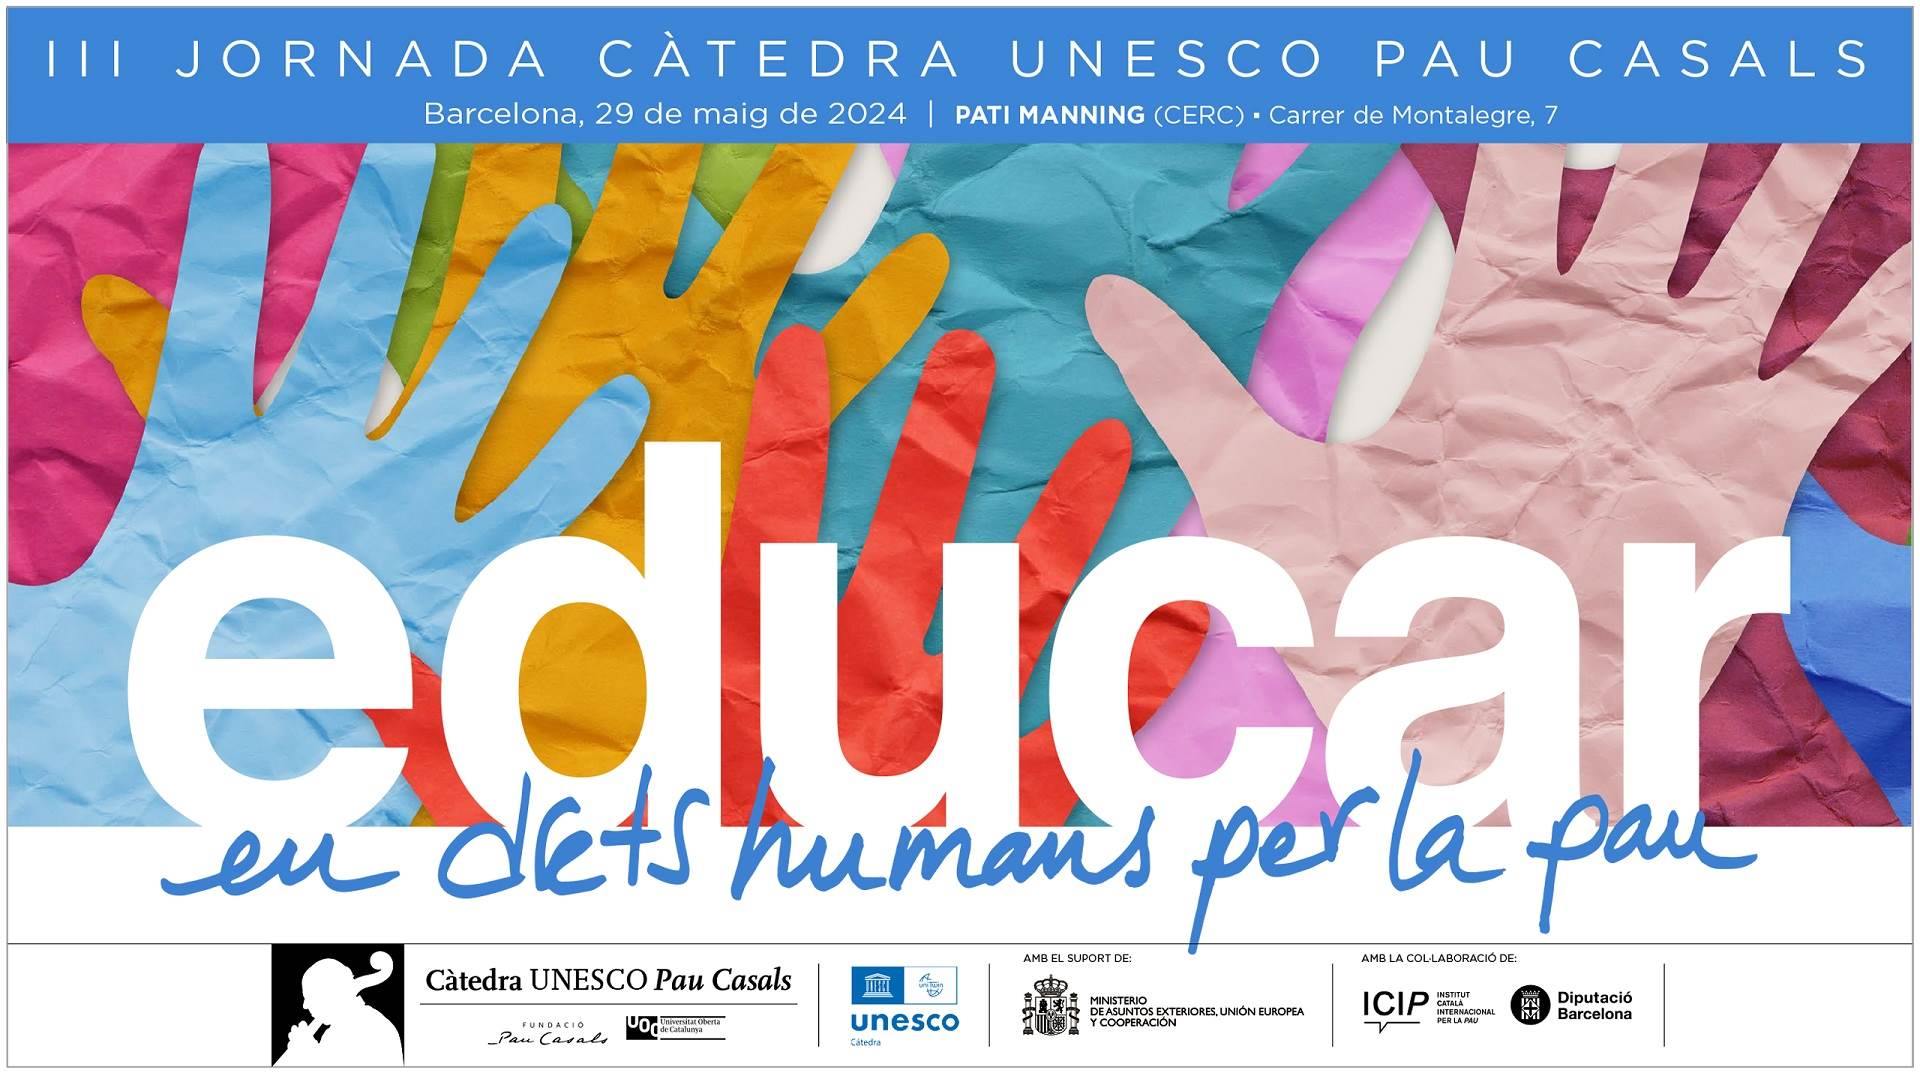 La funció de la cultura en els drets humans i la pau, a debat en la III Jornada de la Càtedra UNESCO Pau Casals